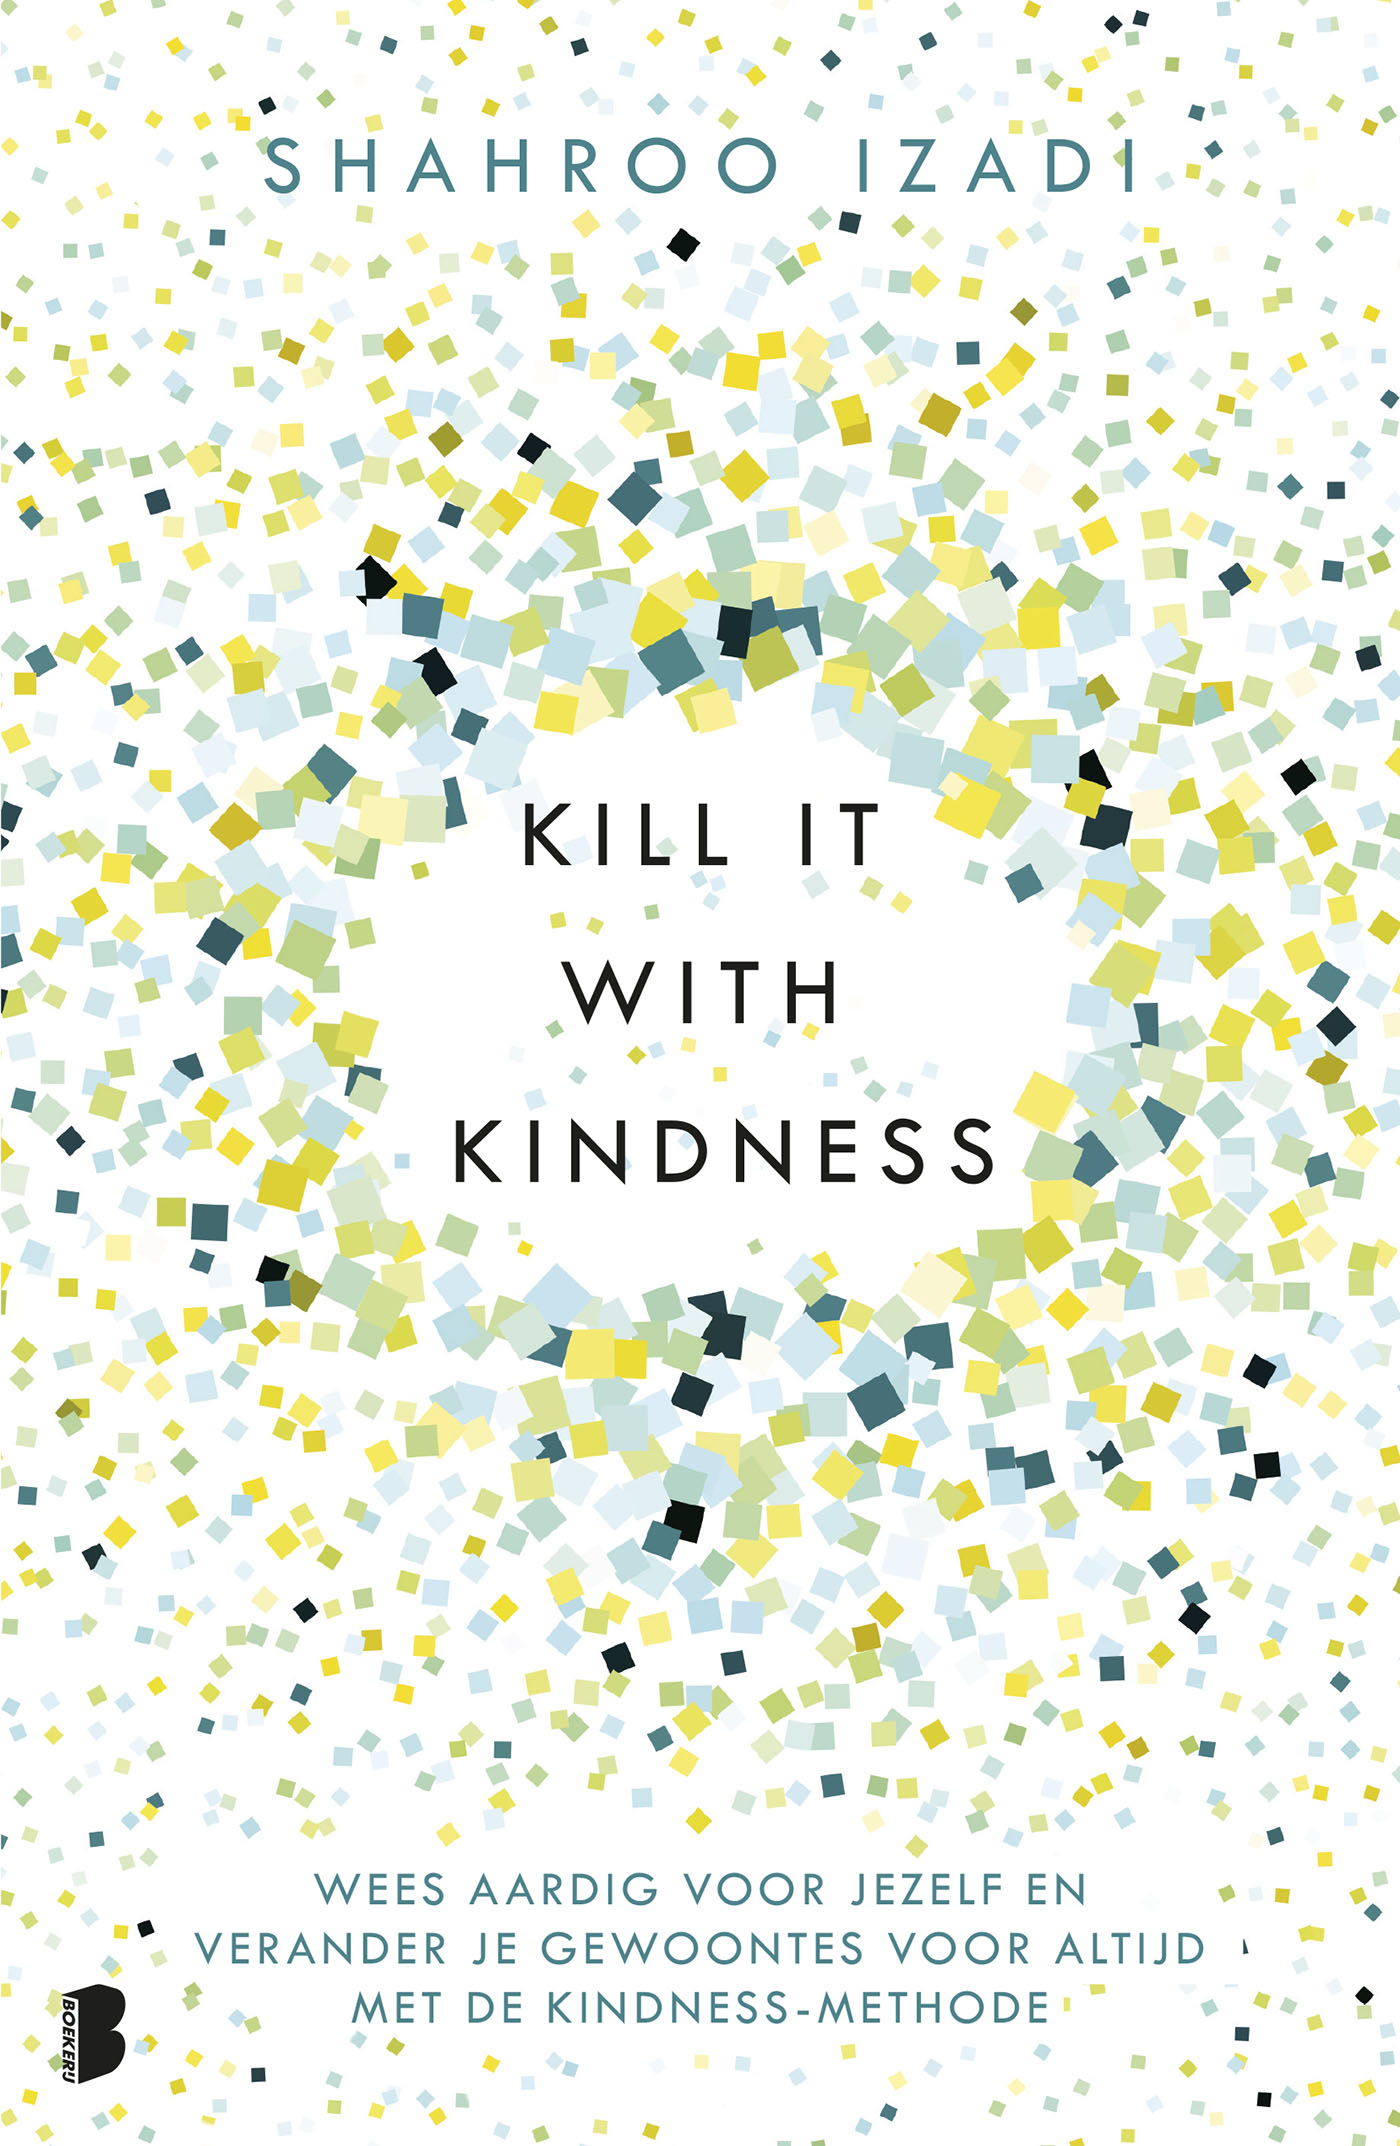 Kill it with kindness